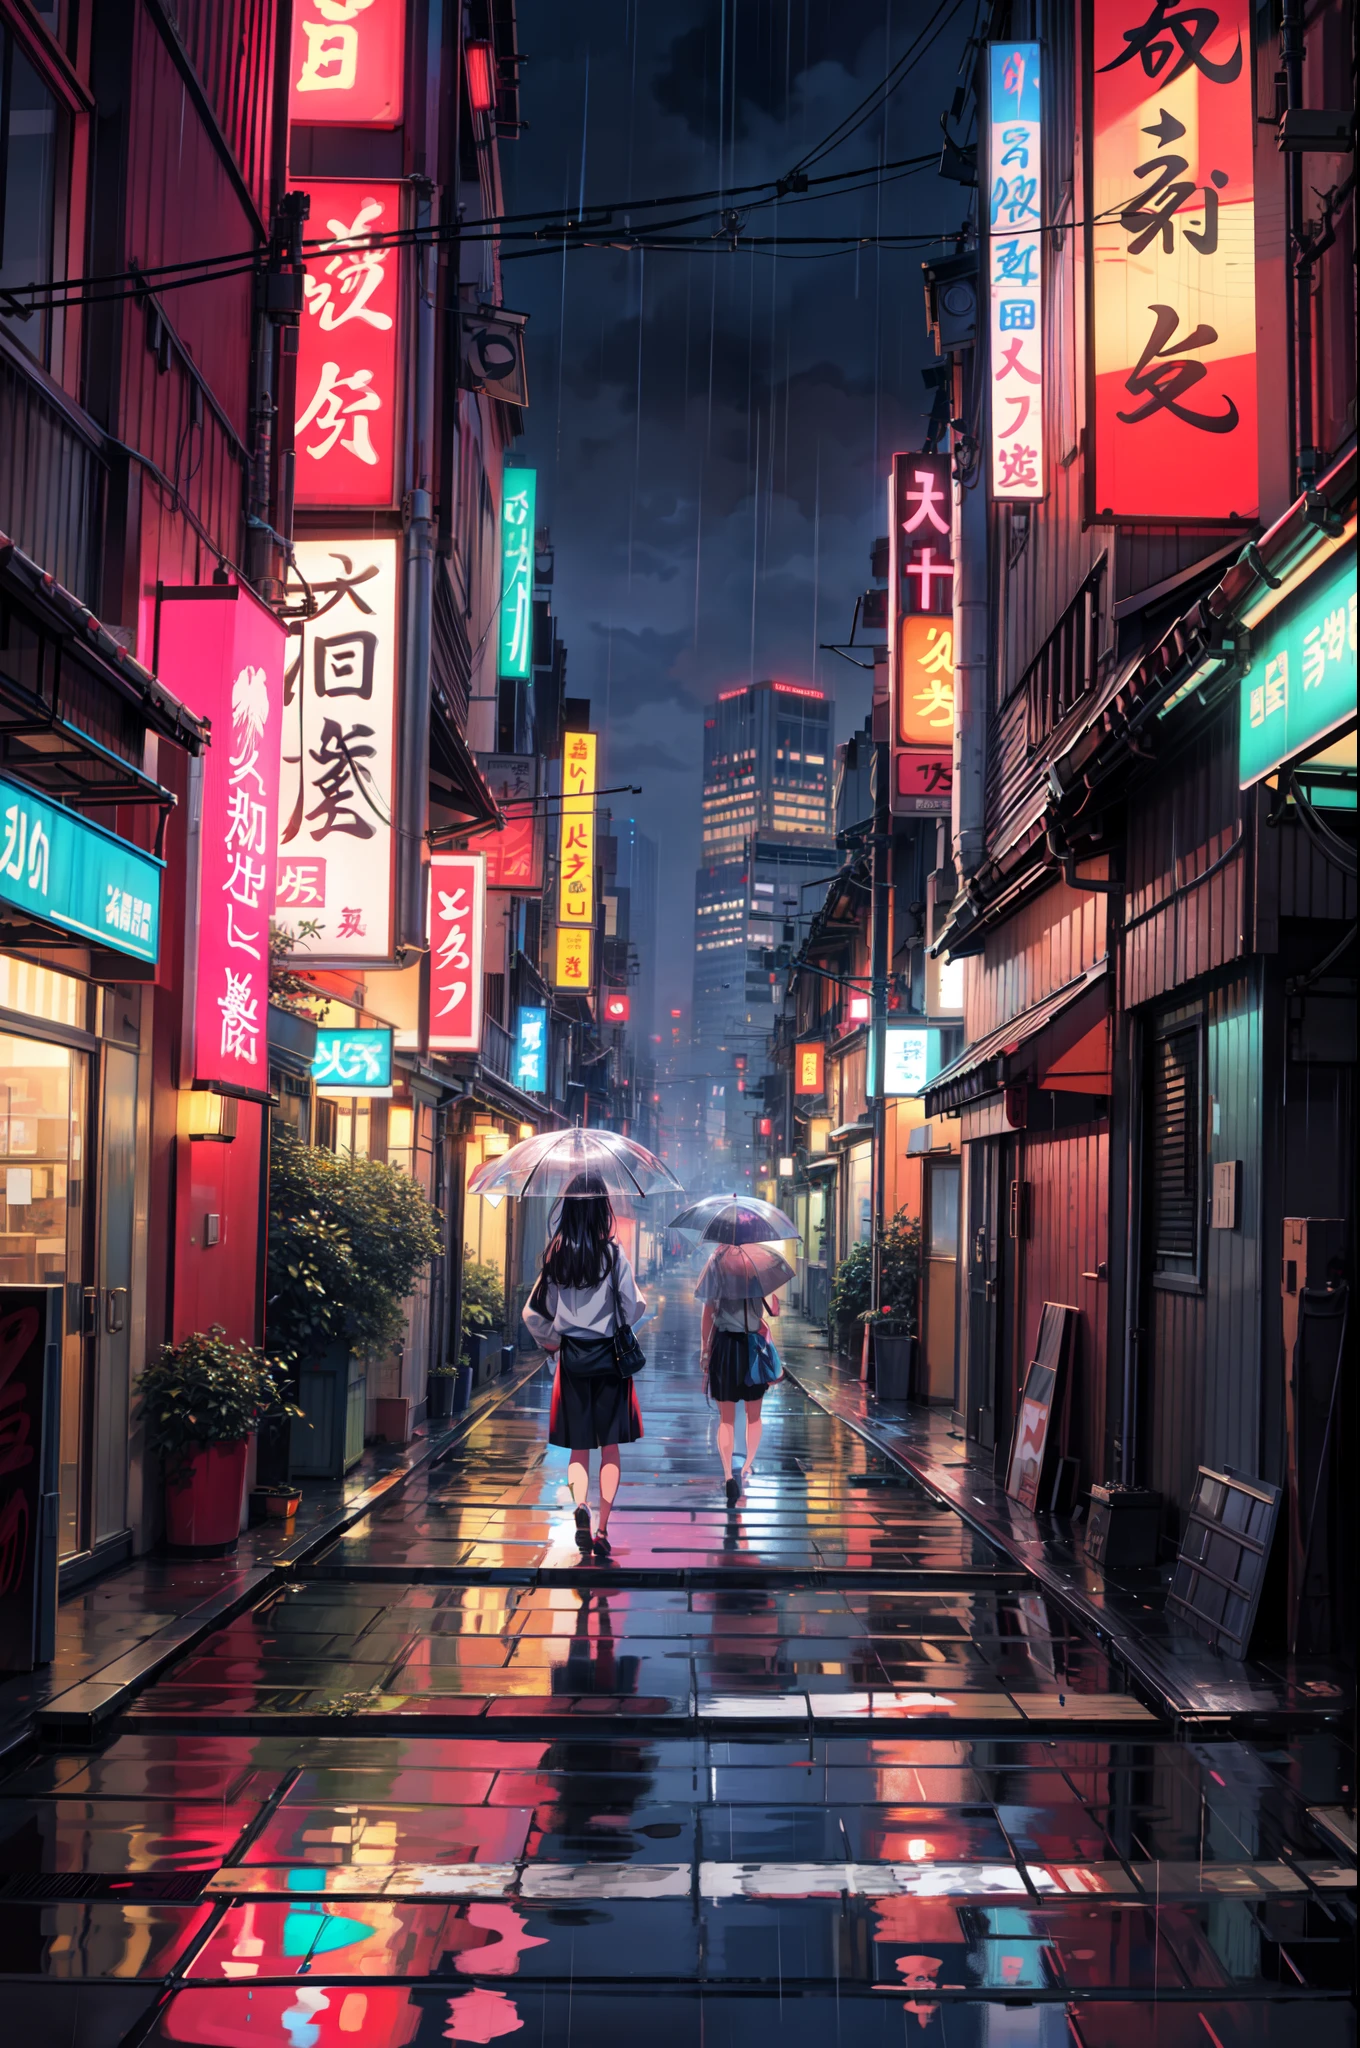 Картина дождливого времени Токио, переулок , красивый пейзаж, осадки,мокрый тротуар ((блестящий взгляд)),HD, высокое качество, отражение воды, кусты,4k HD, облако,beautiful art uHD 4 k, красивая иллюстрация произведения искусства, Красивая цифровая живопись, высокодетализированная цифровая живопись, красивые цифровые изображения, детальная роспись 4к, очень детальная цифровая живопись, насыщенные живописные цвета, Великолепная цифровая живопись